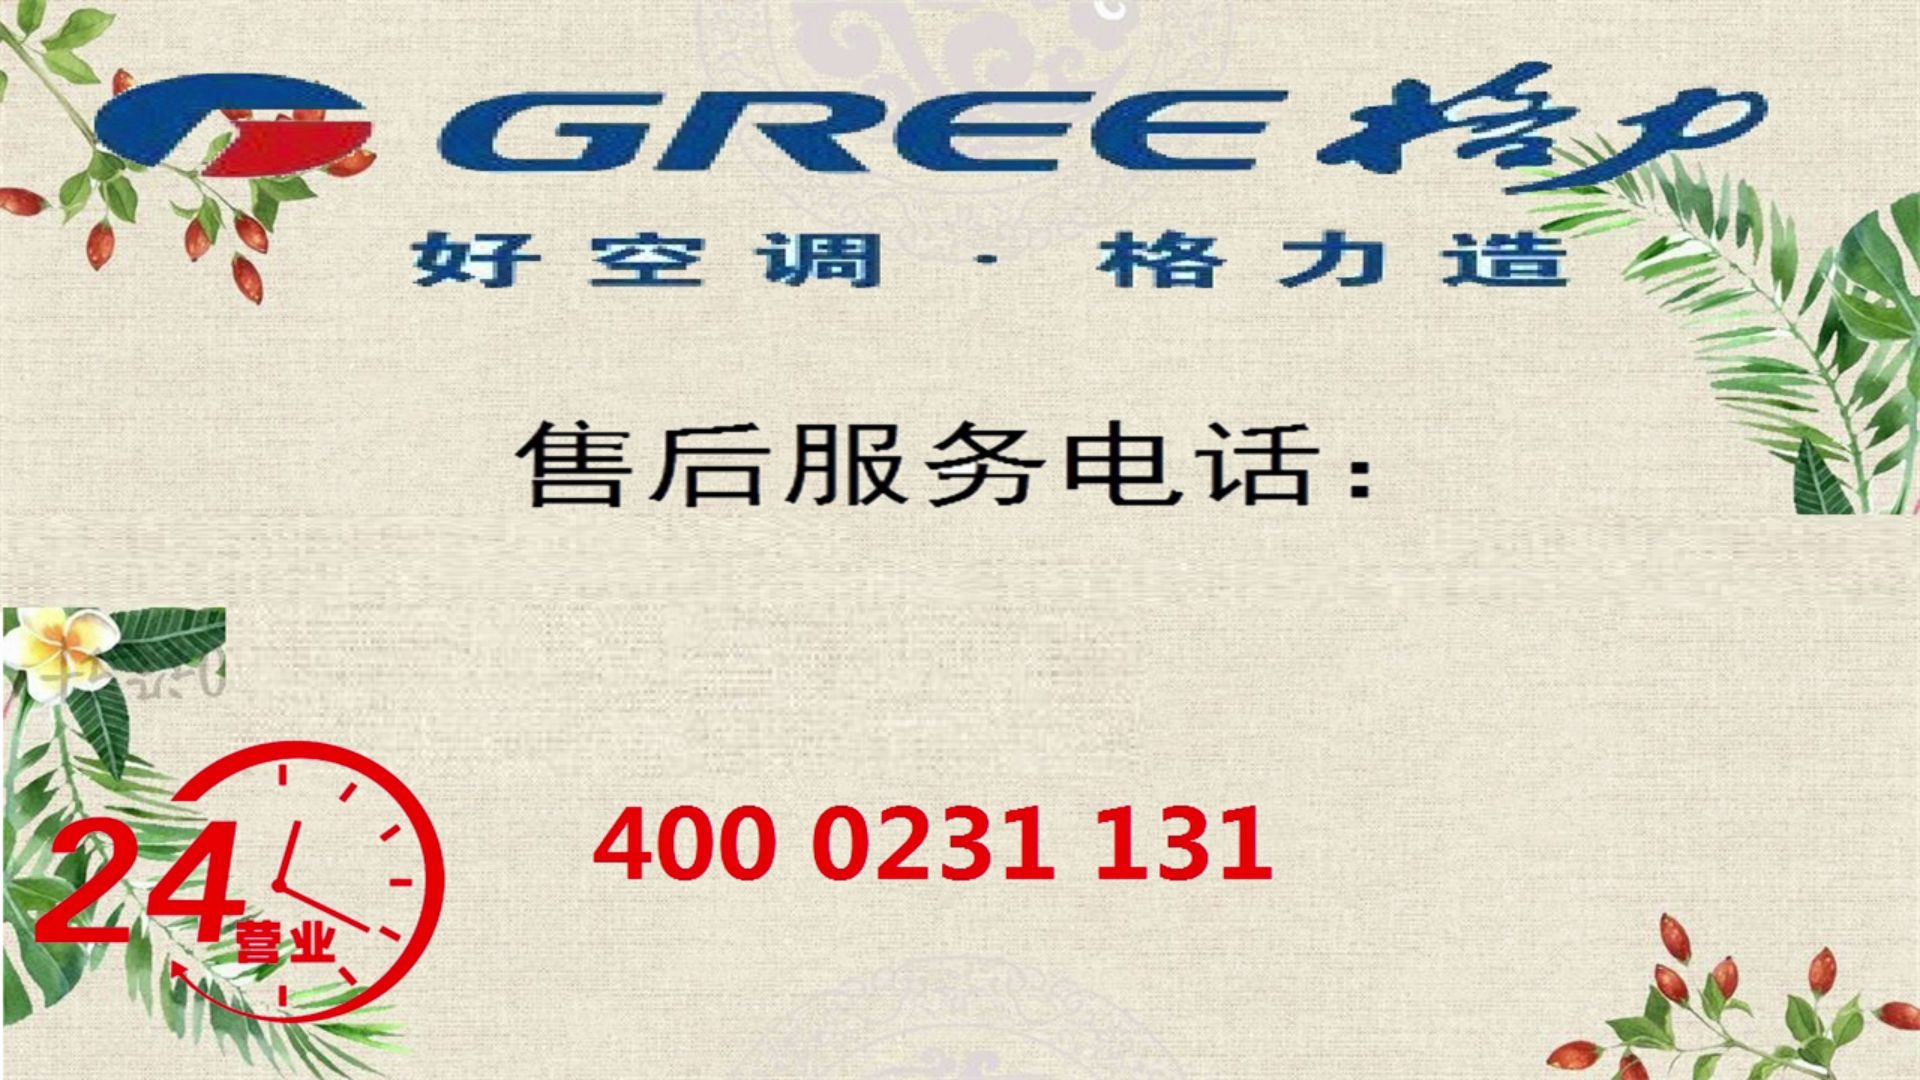 _广州格力专卖店电话是多少_广州格力客服售后服务热线电话